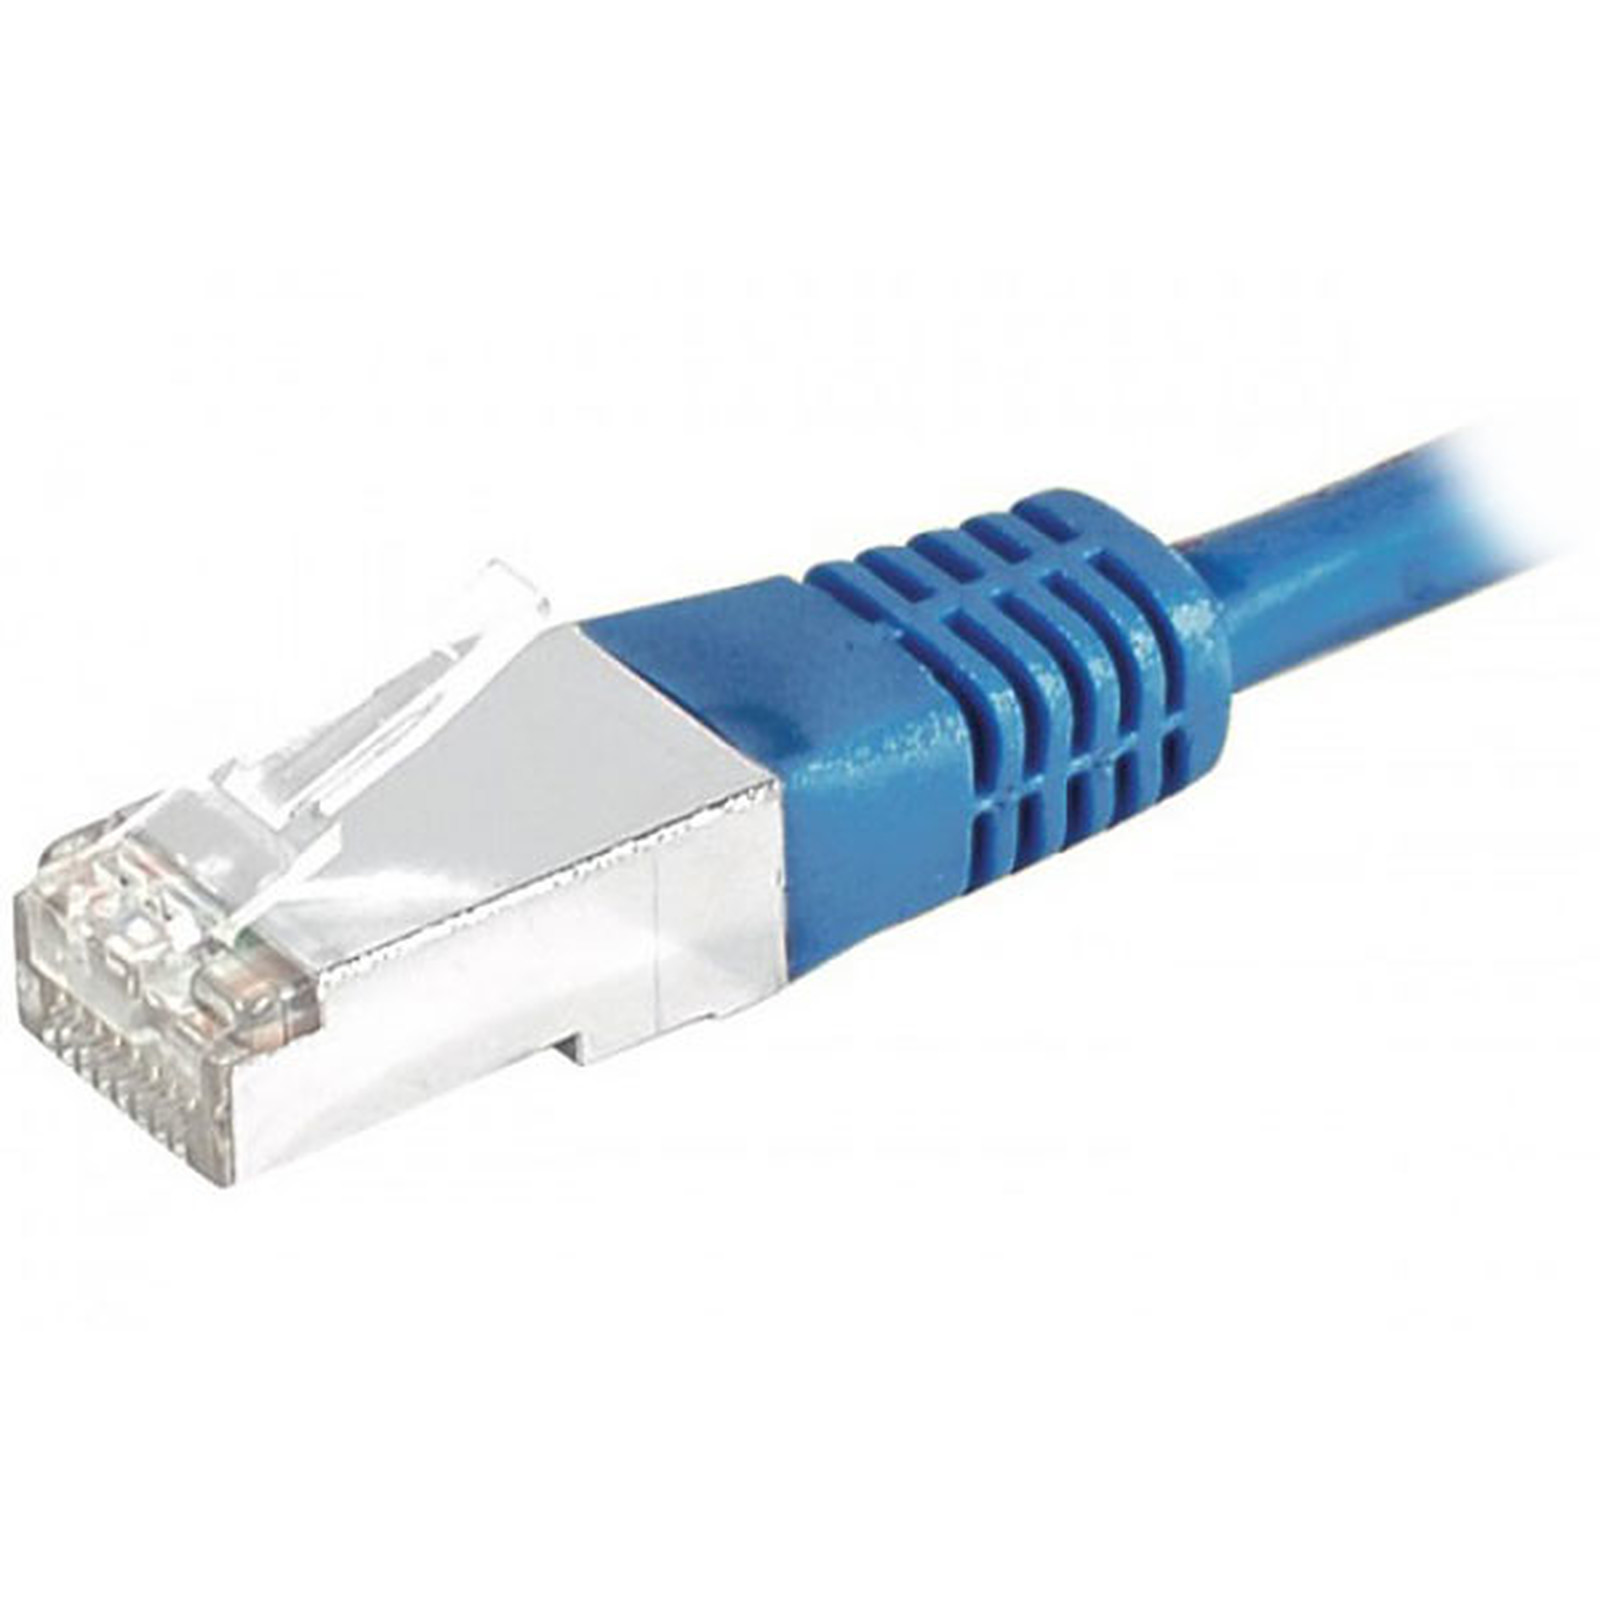 Cable RJ45 categorie 6 S/FTP 2 m (Bleu) - Cable RJ45 Generique